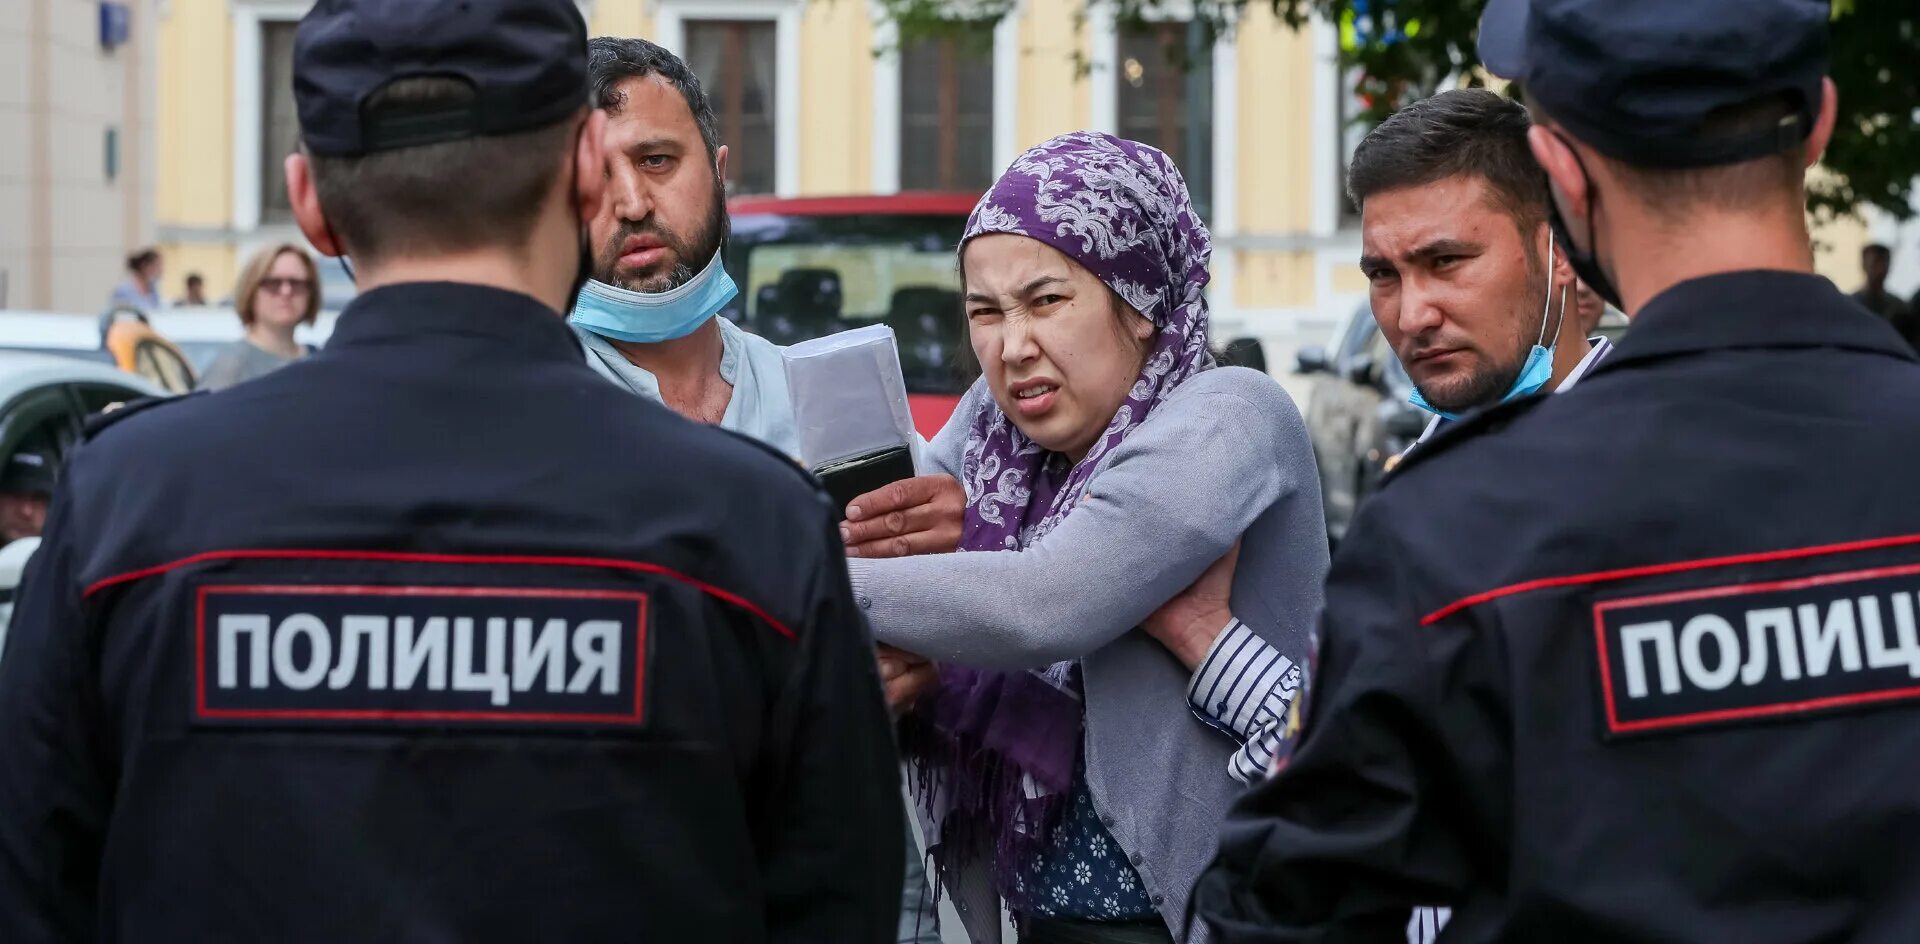 Отток таджиков. Мигранты в Москве. Таджикские мигранты. Таджики мигранты в Москве. Мигранты и полиция.